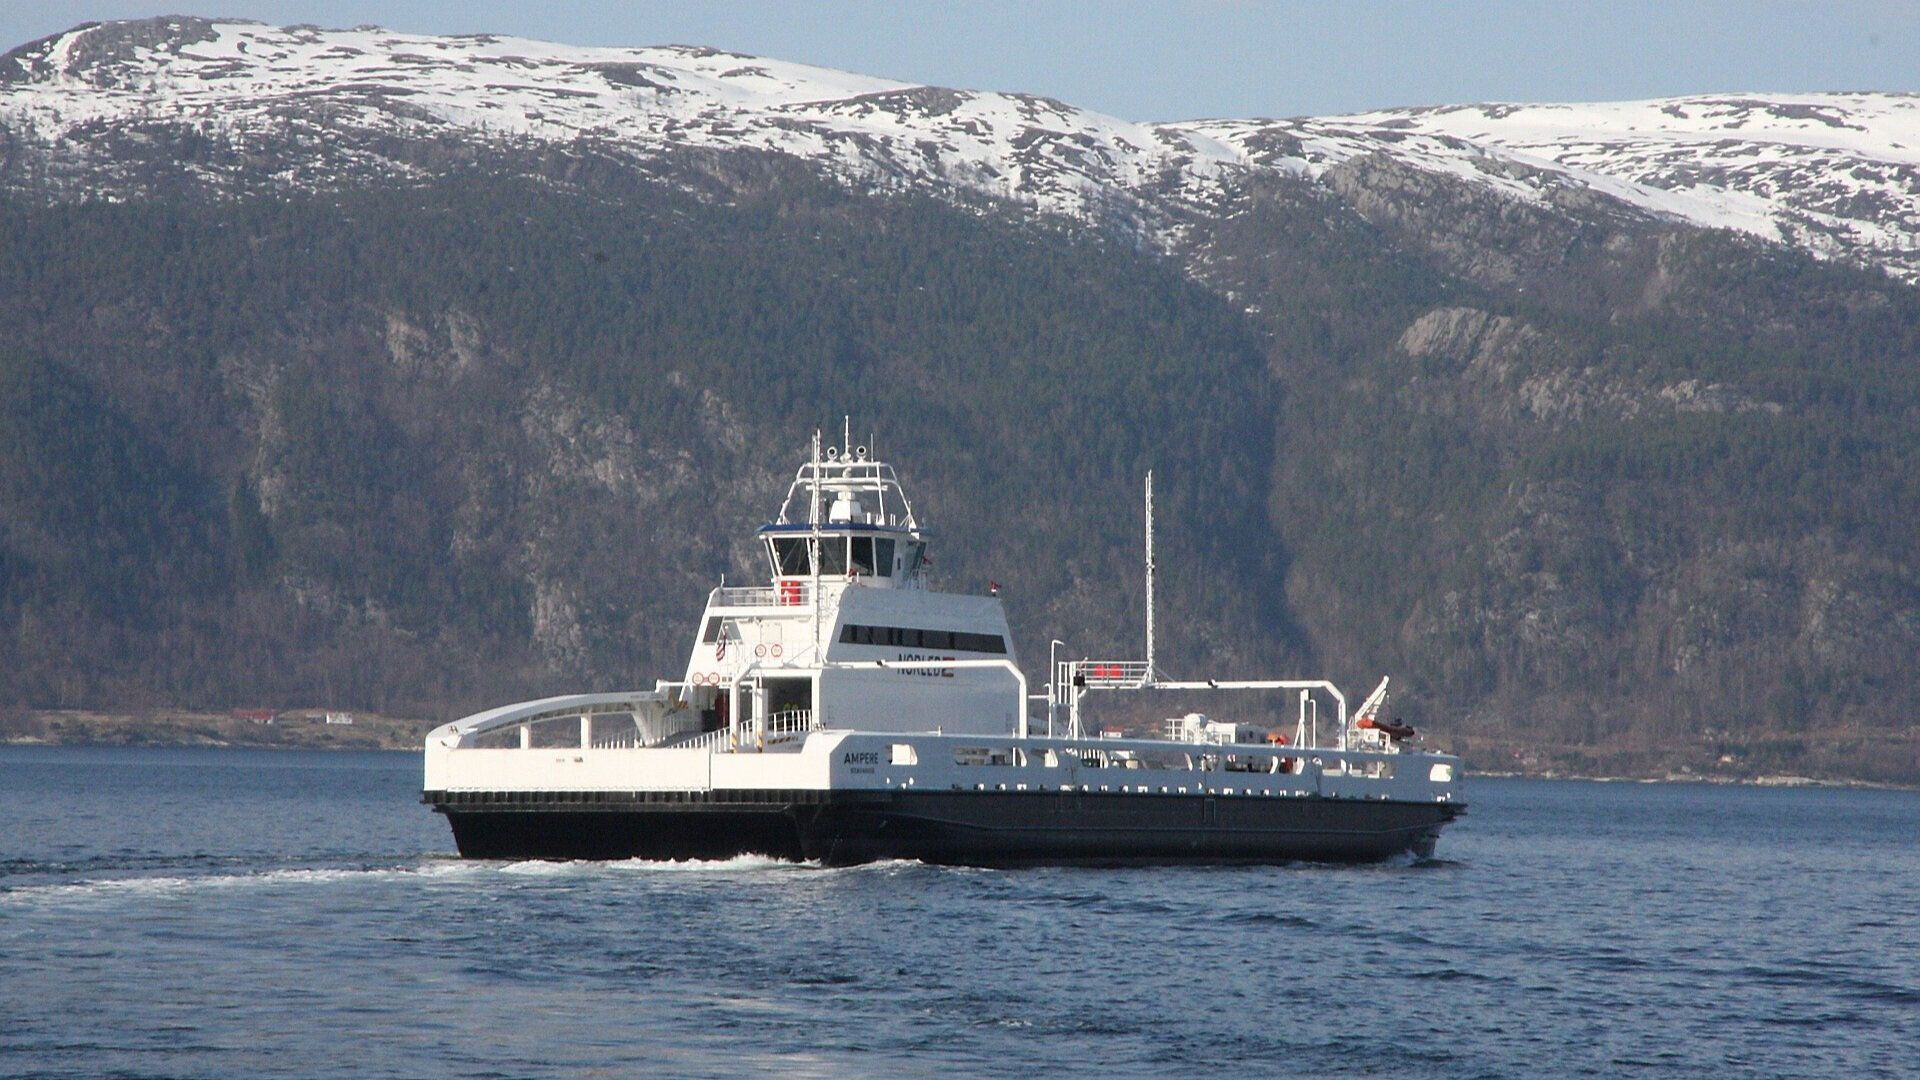 ams_anlegg_marine_referenz_ferje_lifjord_2.jpg